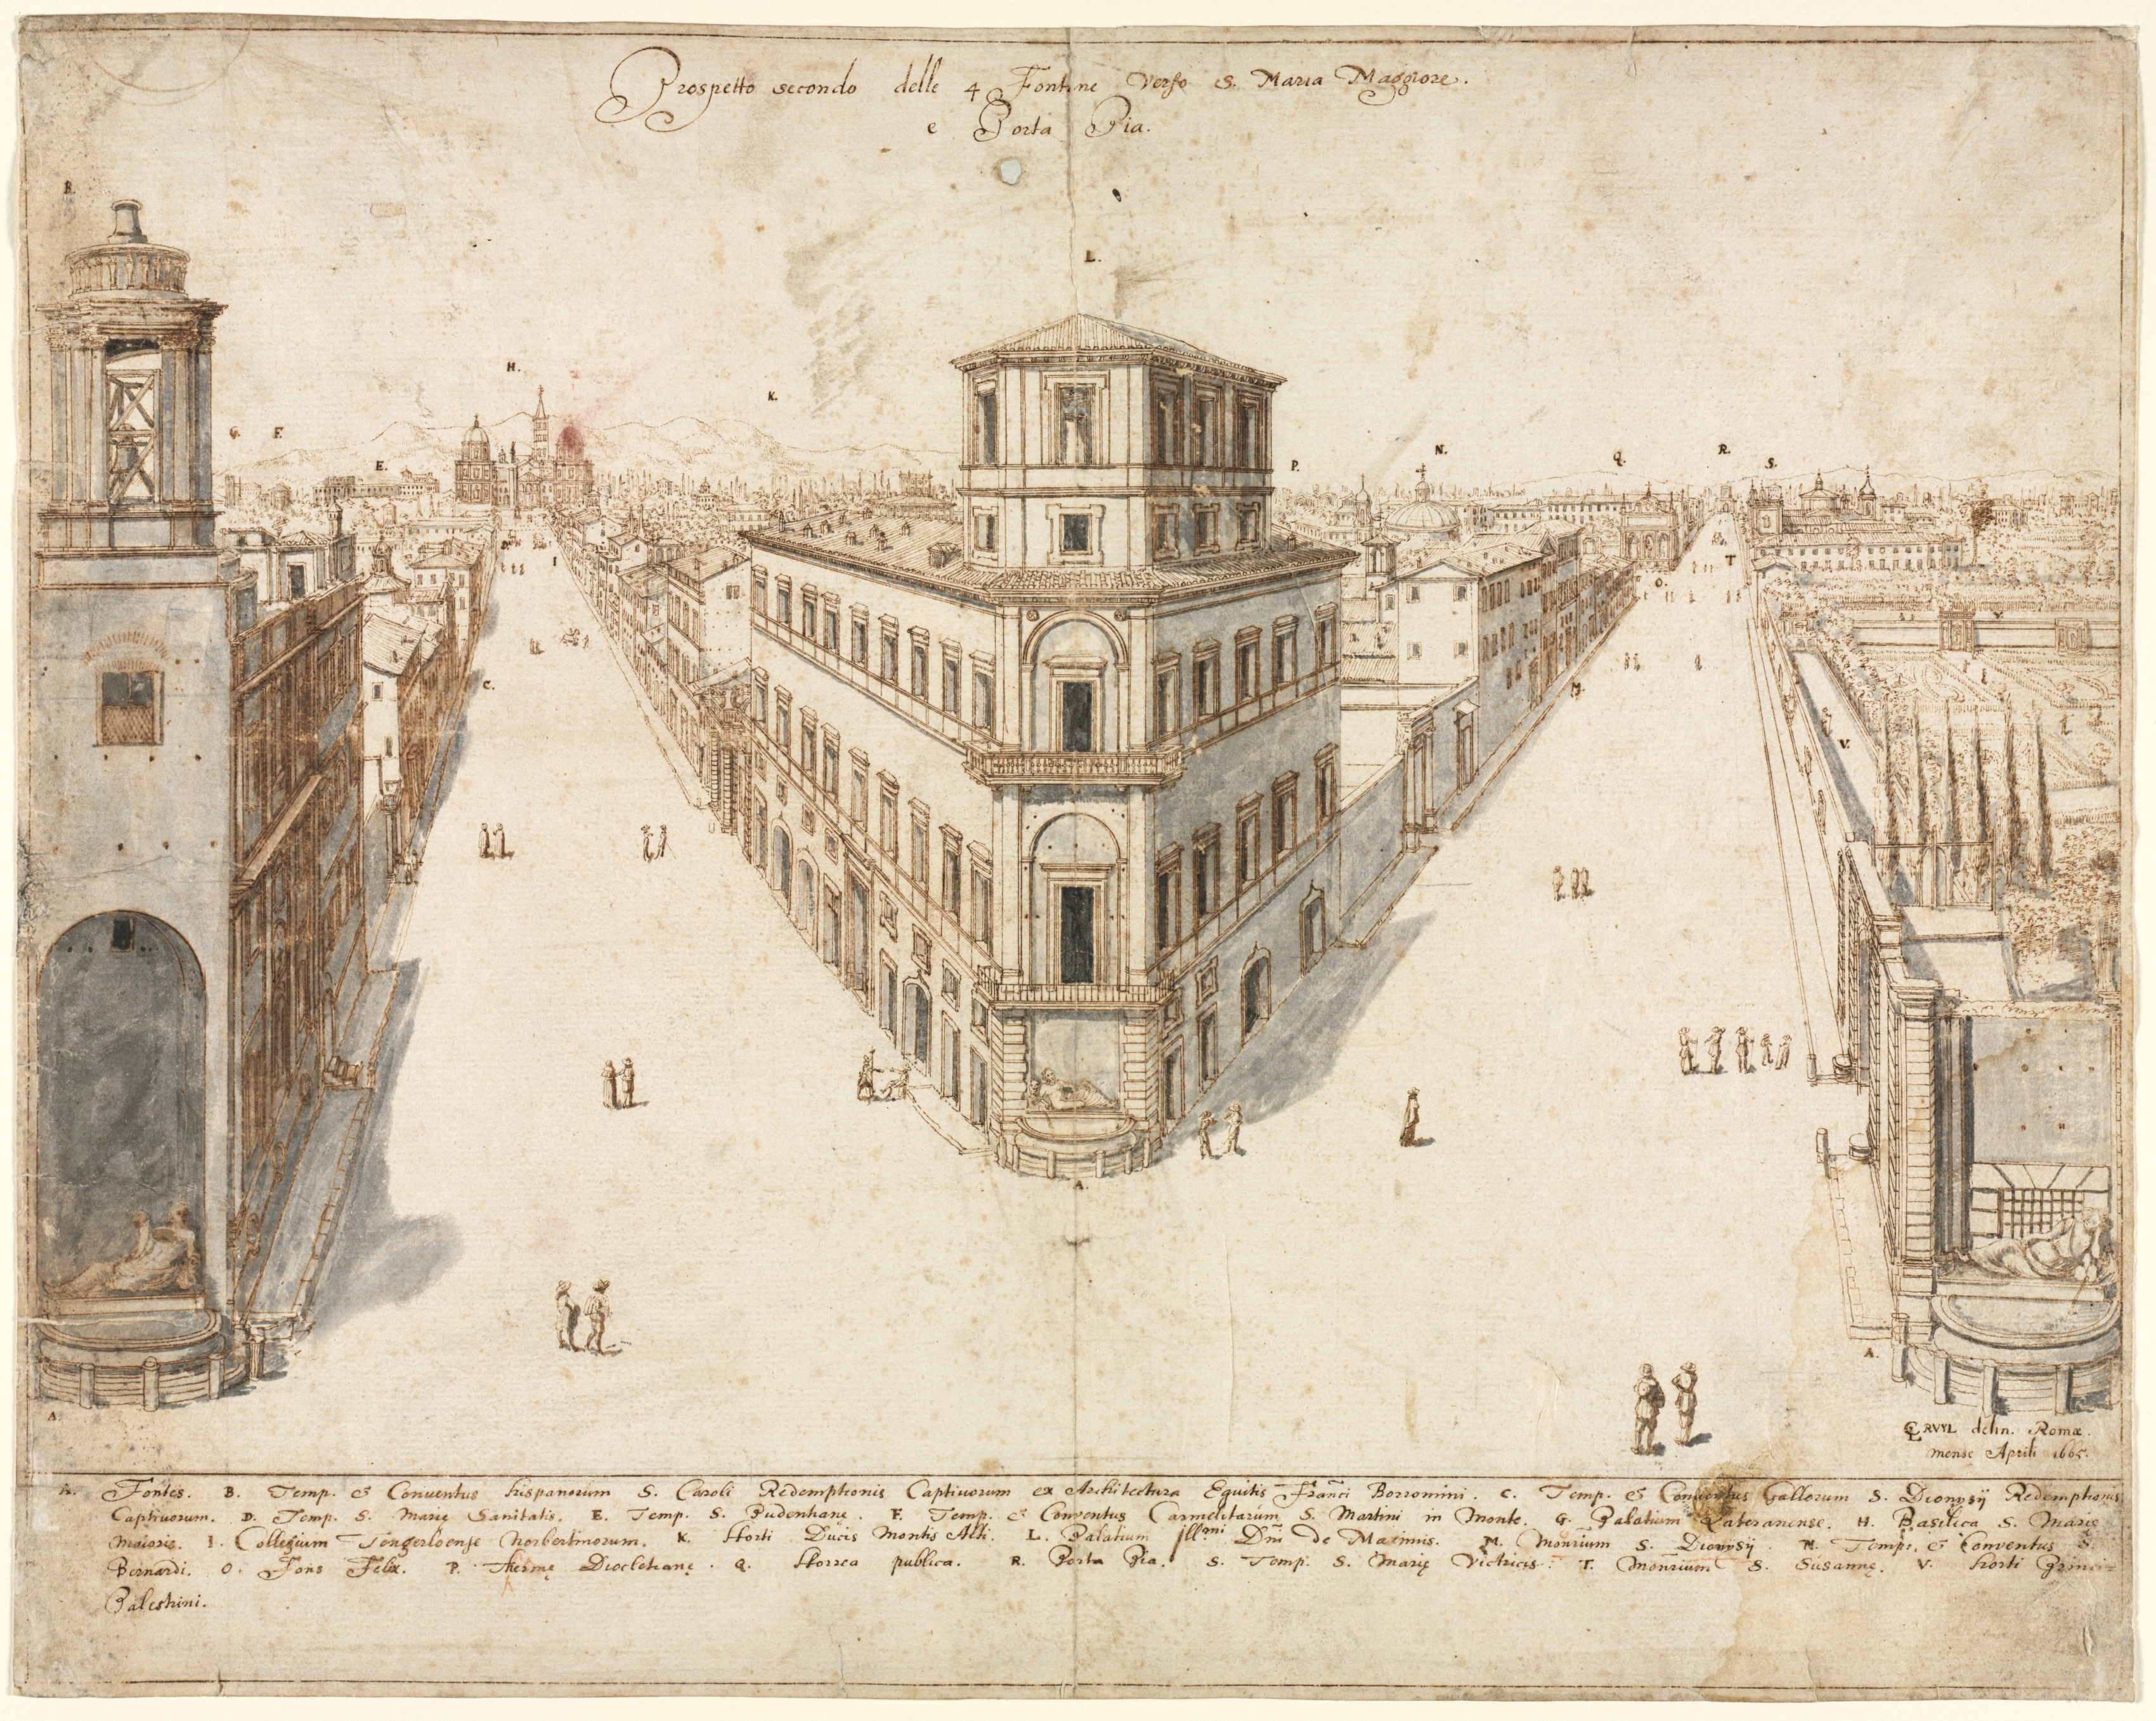 Eighteen Views of Rome: The Quattro Fontane Looking Toward Santa Maria Maggiore